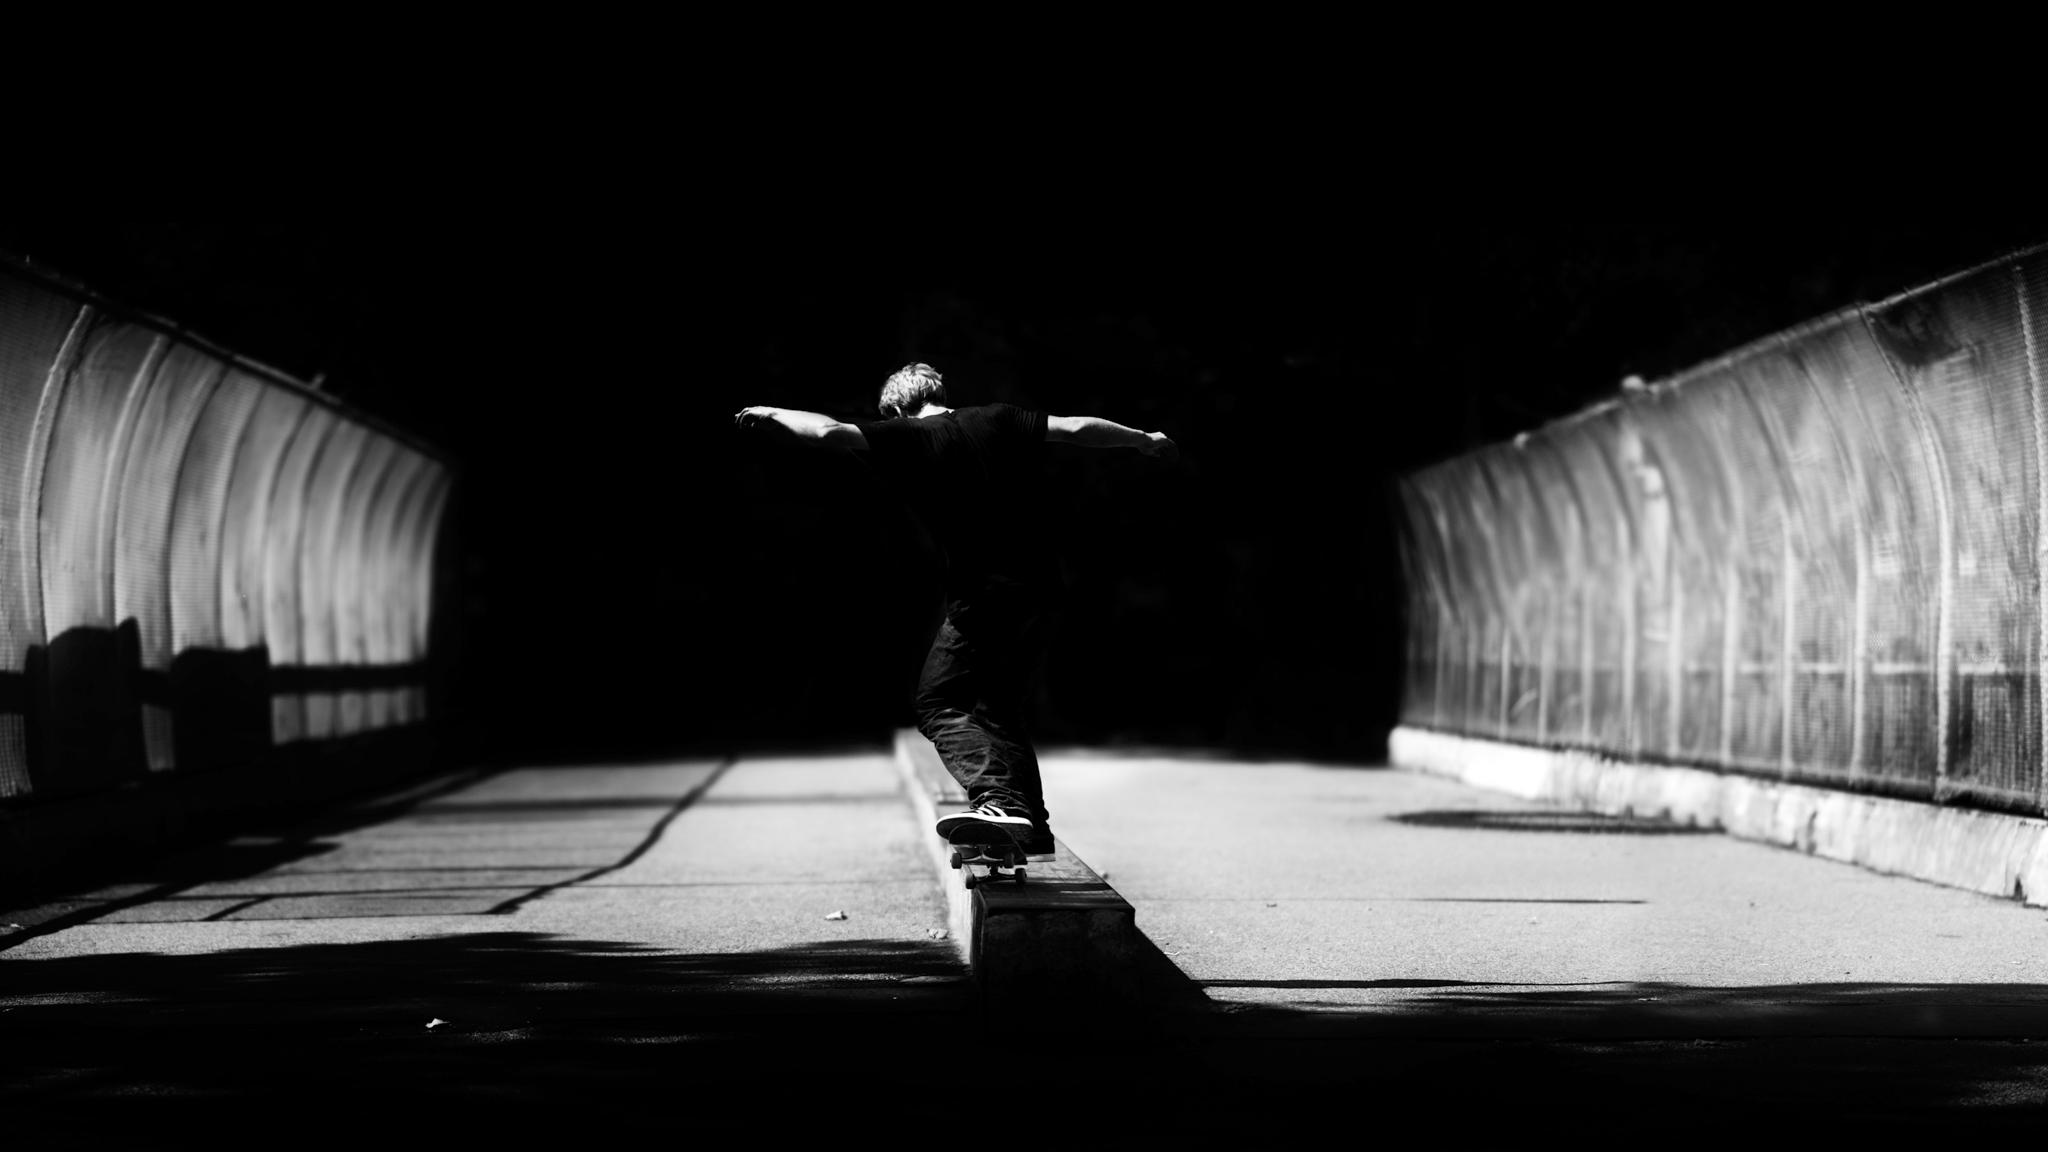 2048 x 1152 · jpeg - Skateboarding HD Wallpapers | PixelsTalk